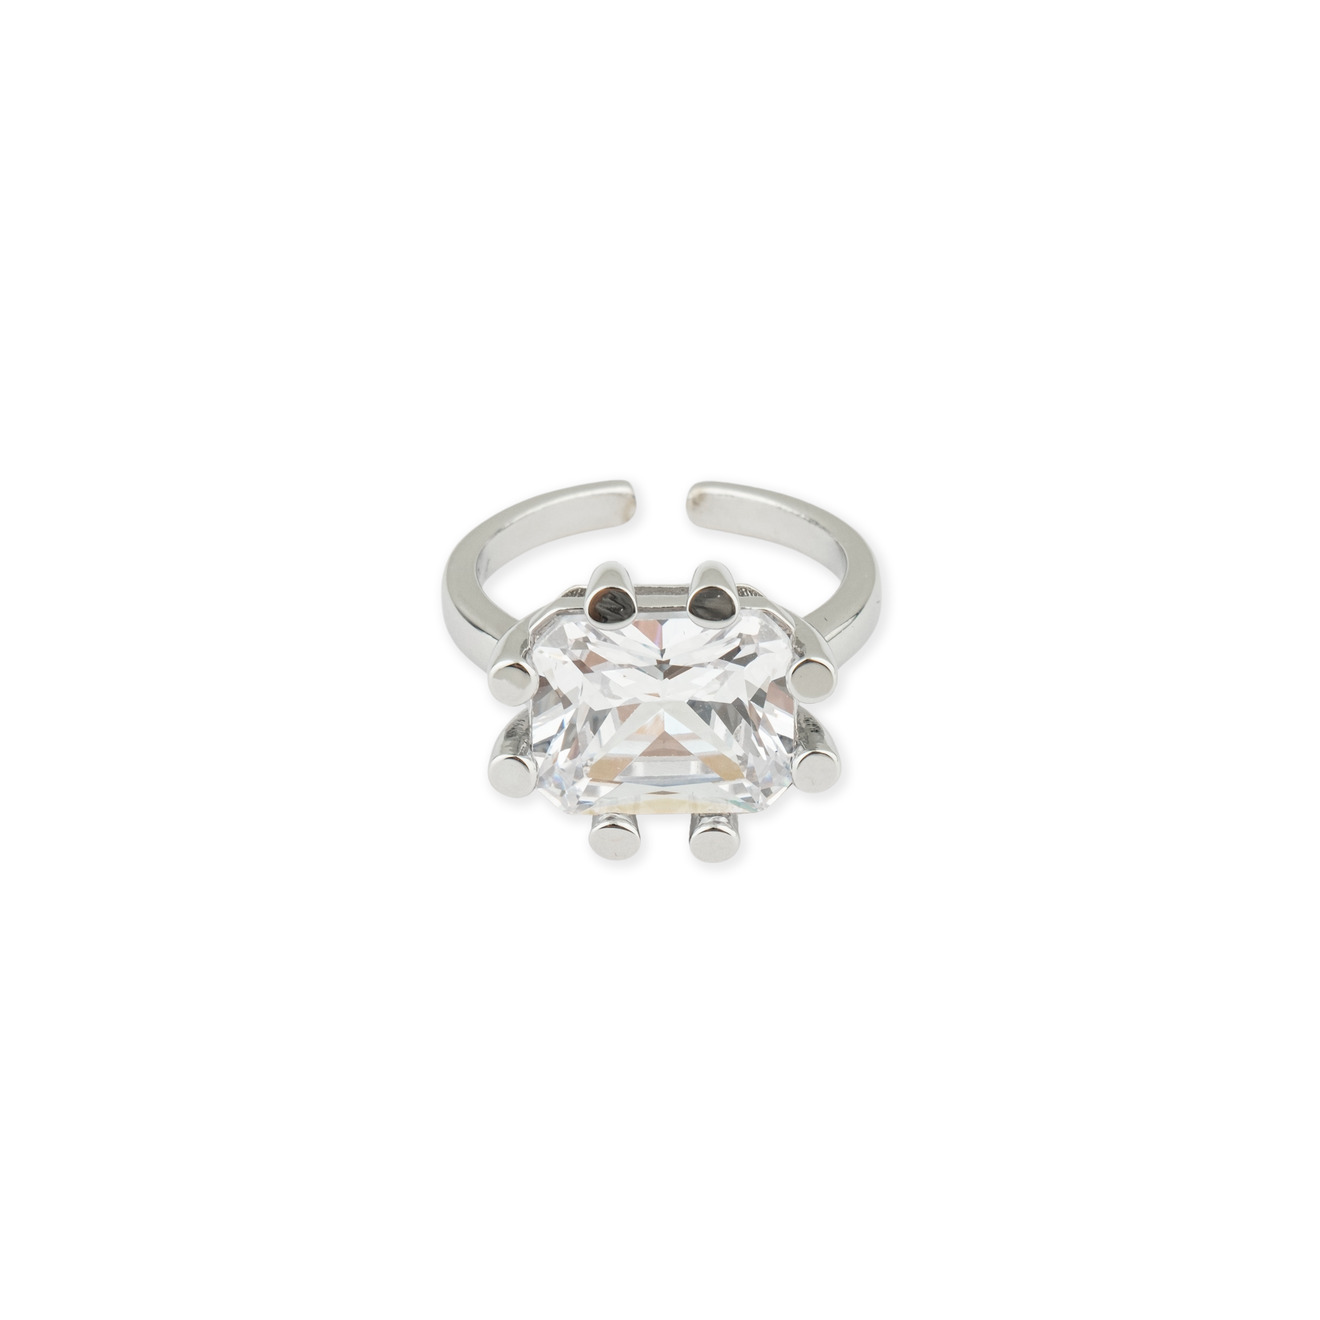 Herald Percy Серебристое кольцо с кристаллом herald percy золотистая цепочка с подвеской прямоугольником с кристаллом